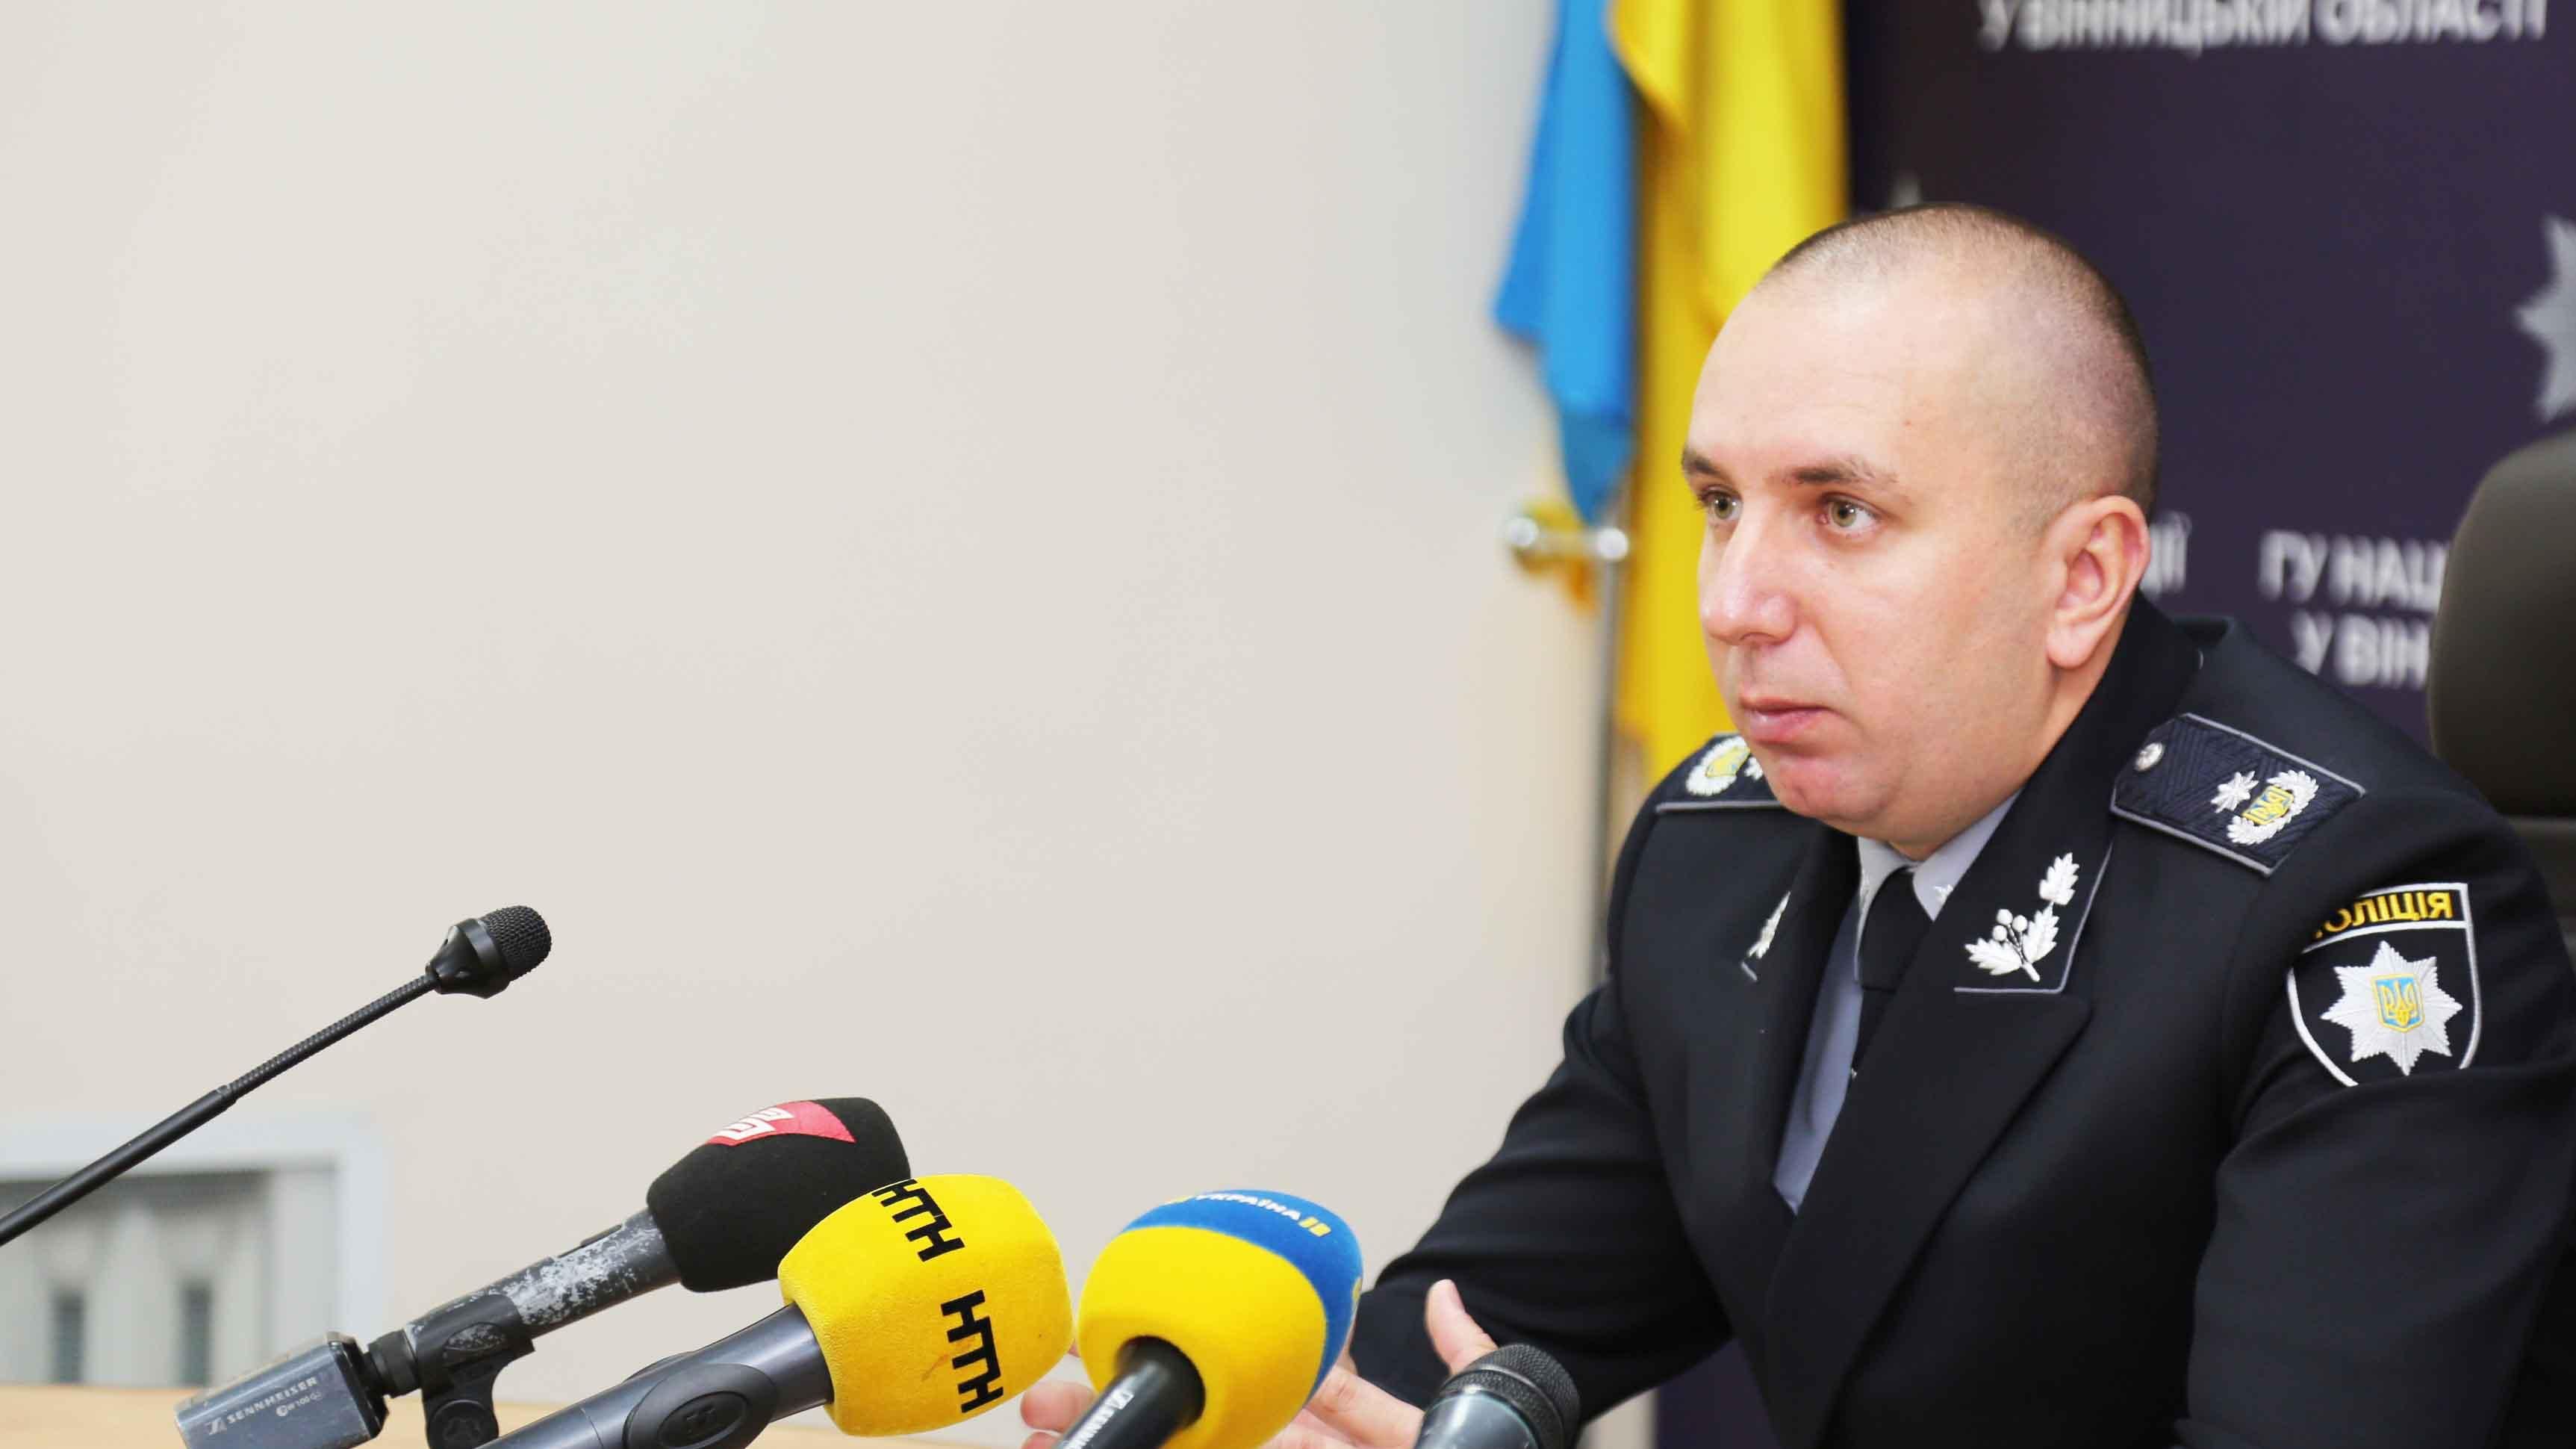 Руководителя винницкой полиции отстранили от исполнения обязанностей: причина